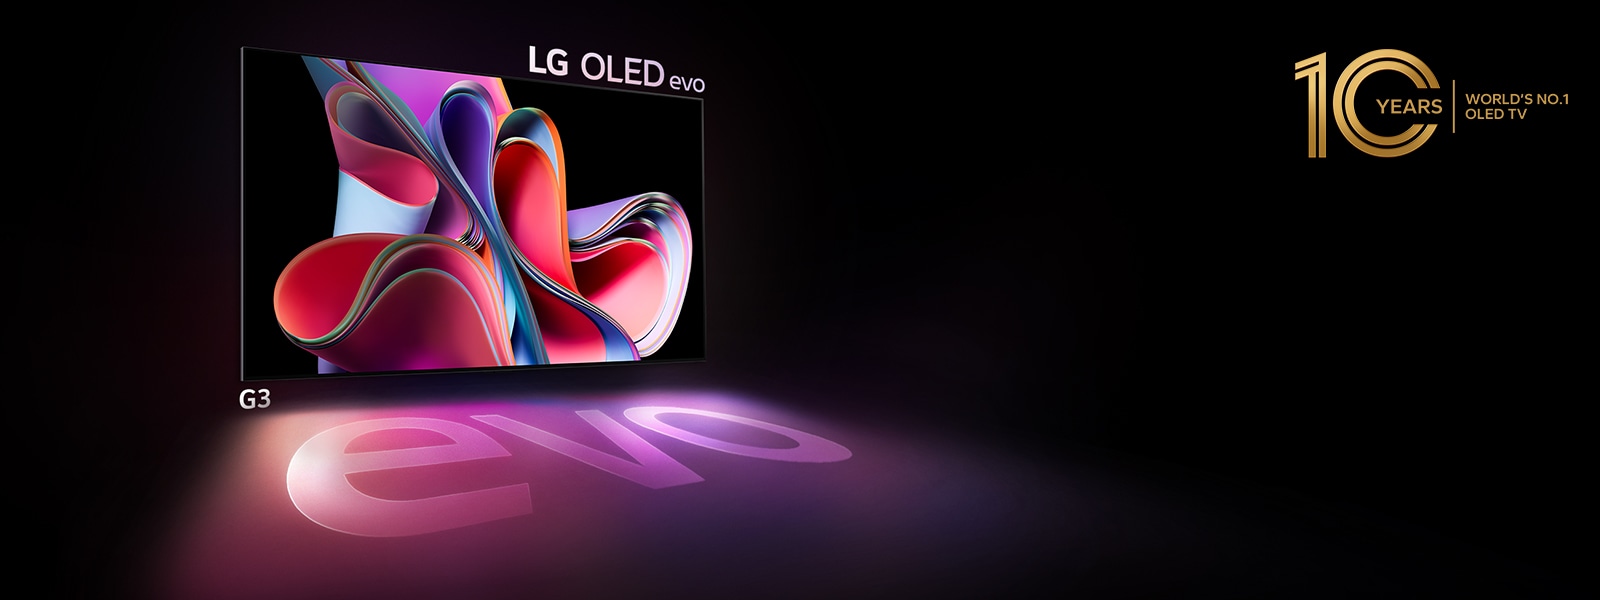 تلفزيون LG OLED G3 evo يشع سطوعًا وإشراقًا في مكان مظلم. وفي أعلى اليمين، يظهر شعار الاحتفال بالعيد السنوي العاشر لظهور تقنية OLED.